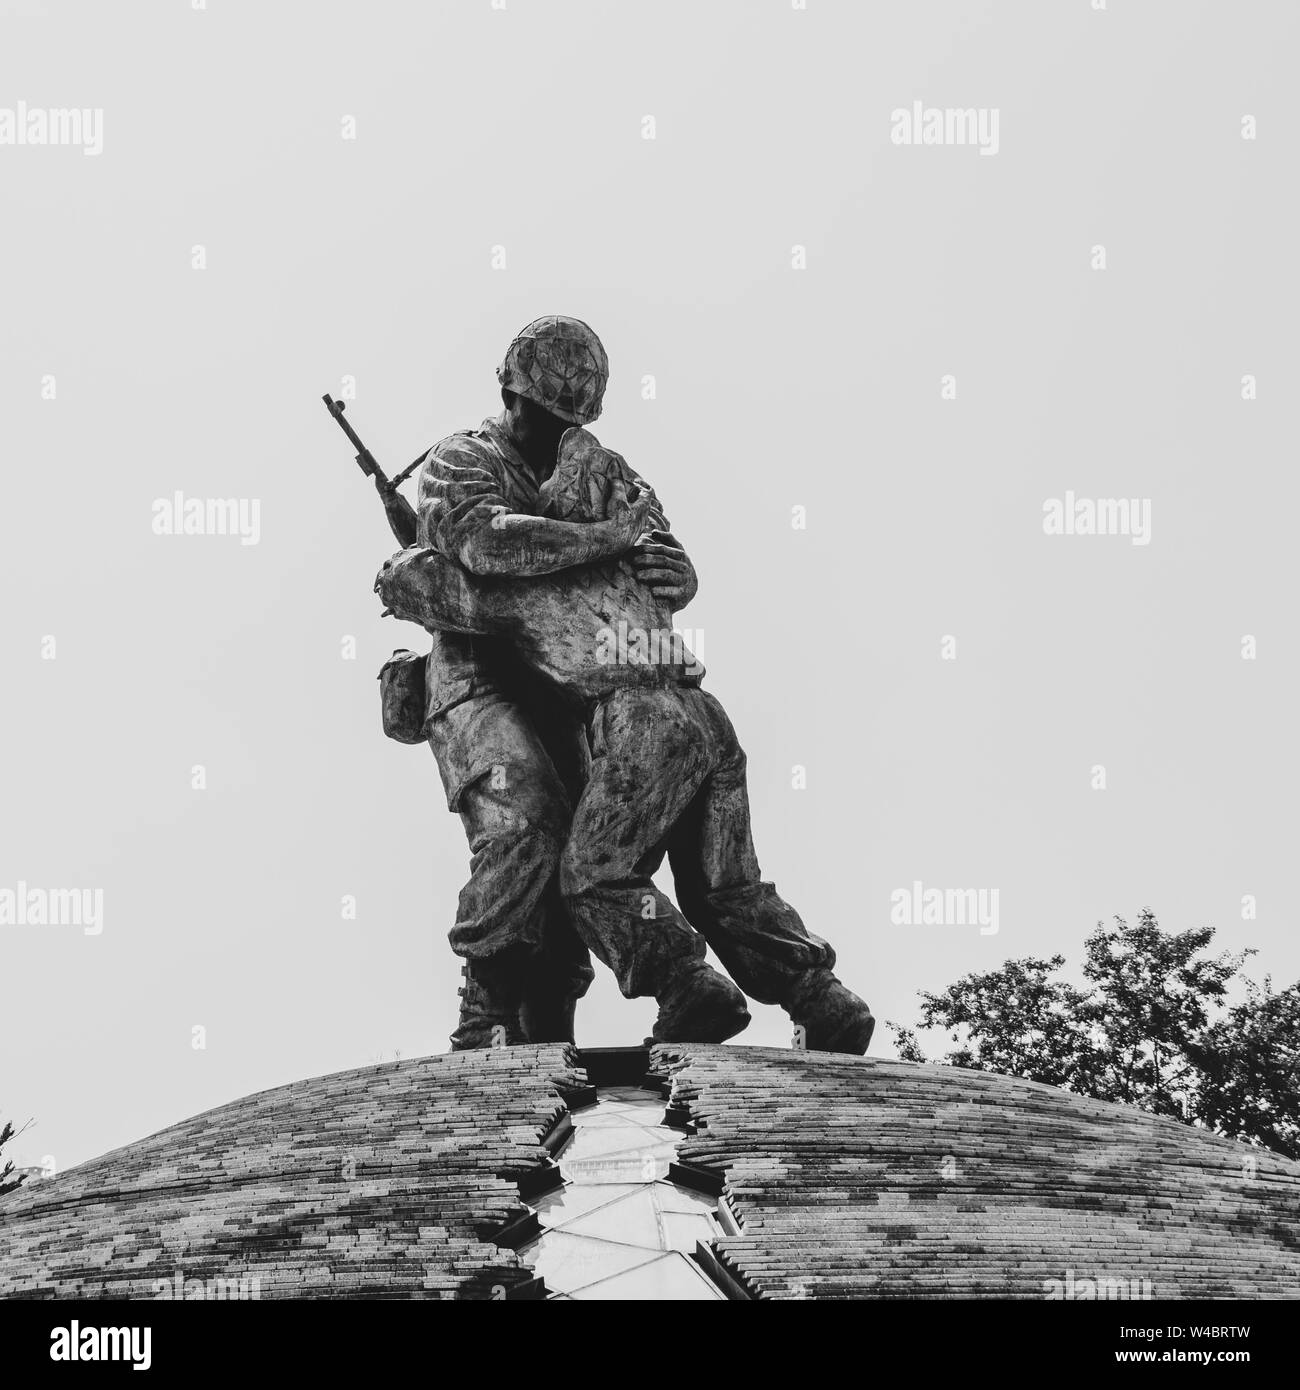 Vista de la Estatua de los hermanos dentro del Monumento Conmemorativo de la guerra de Corea y la reunificación pacífica. De Yongsan, Seúl, Corea del Sur de Asia. Foto de stock